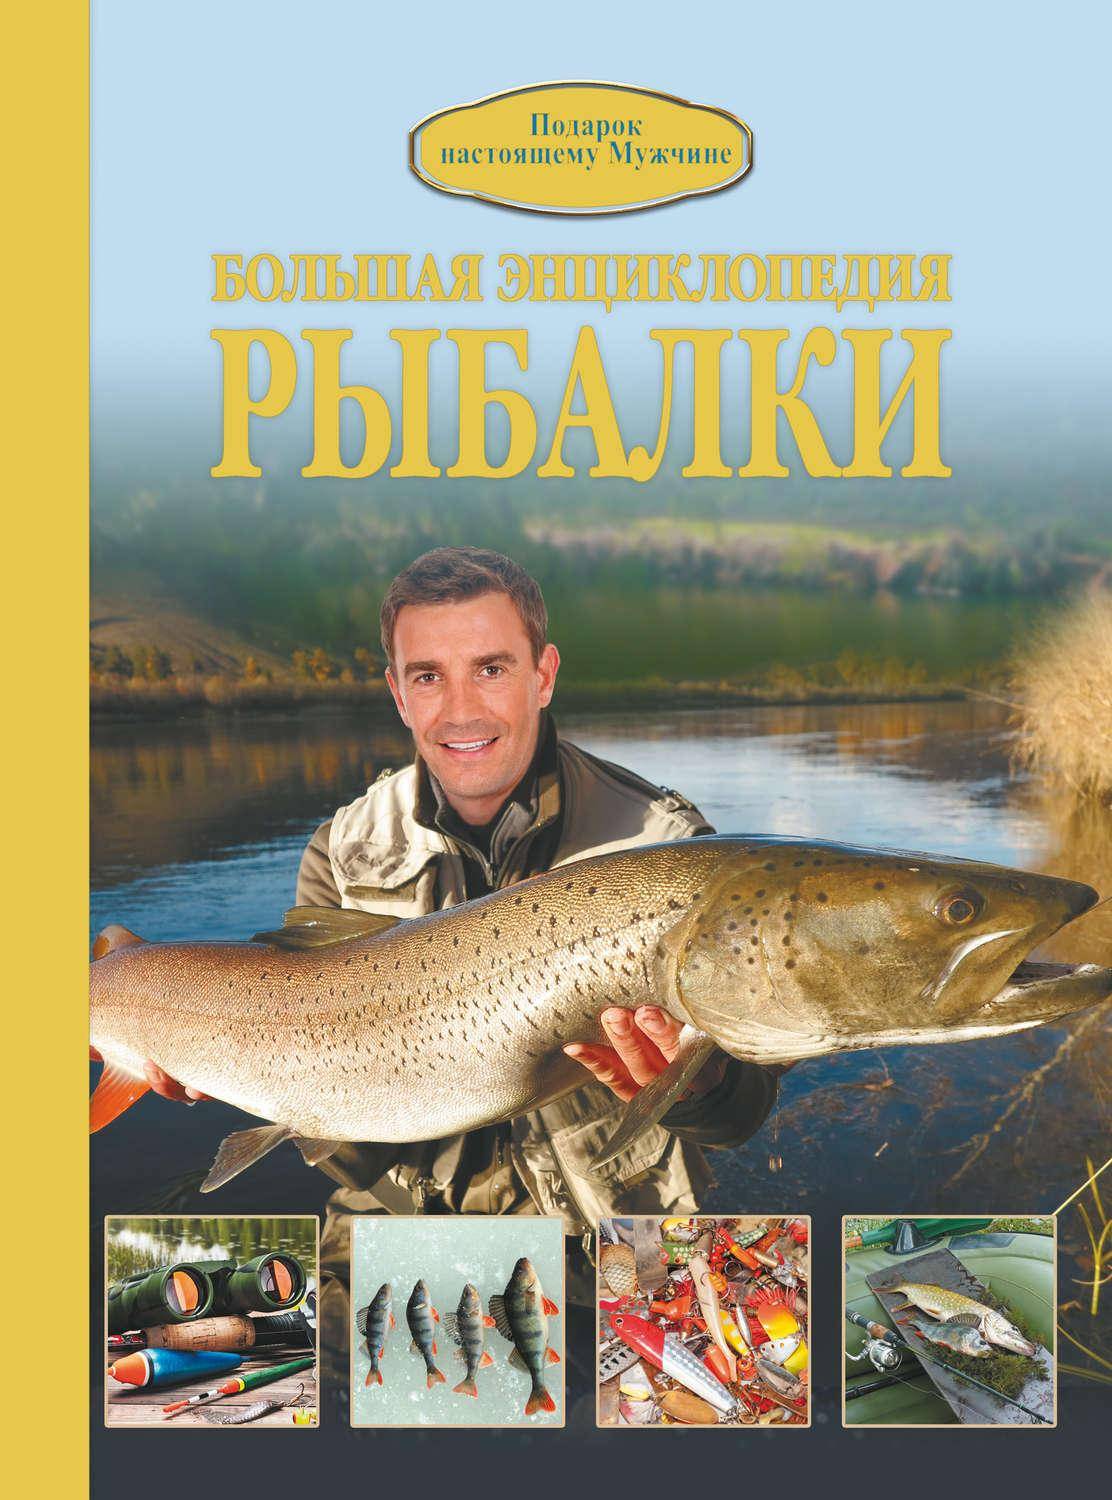 Книги о рыбалке: список лучших книг топ 10 рейтинг!